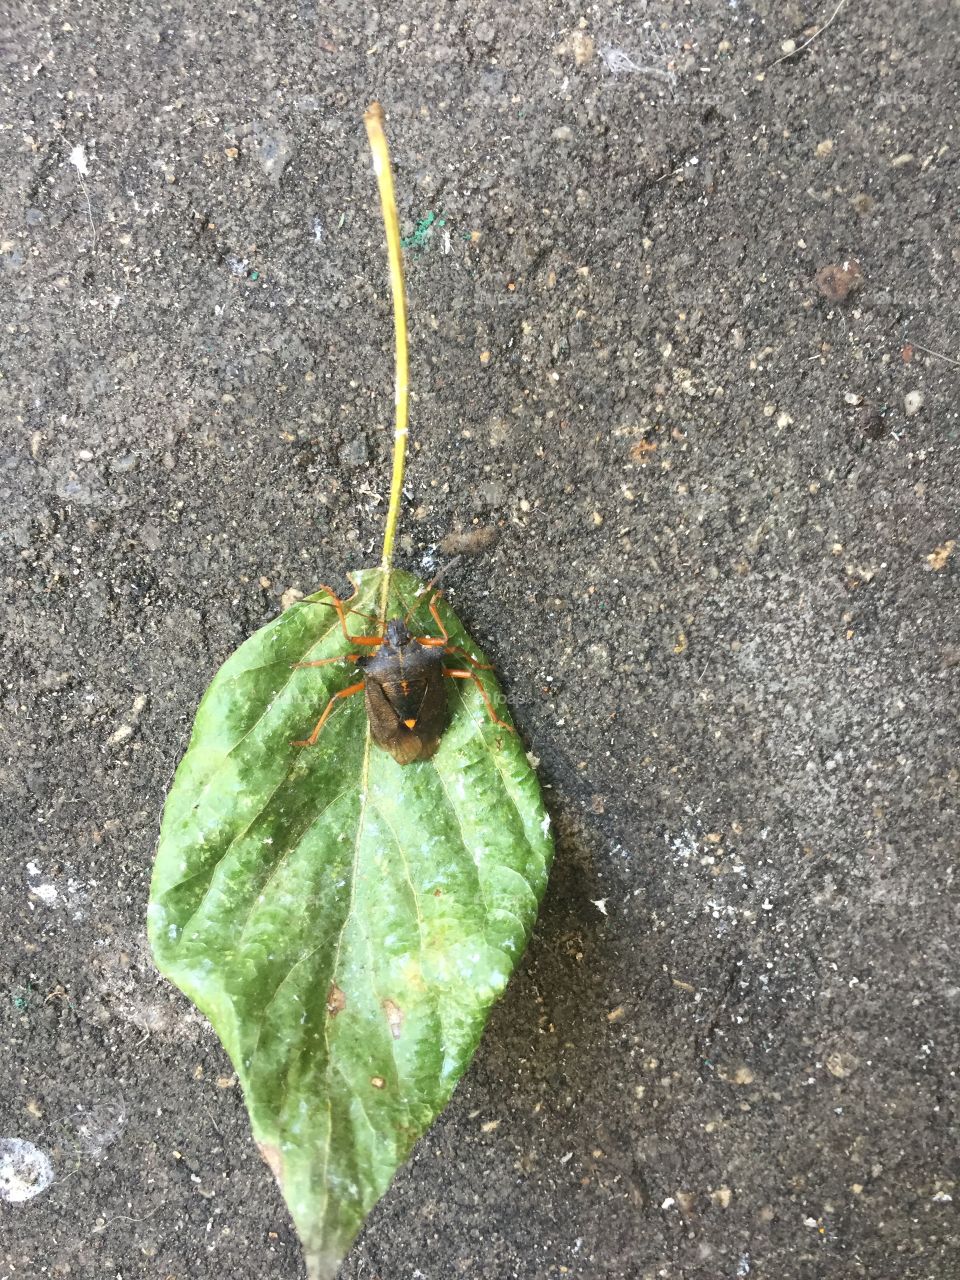 A bug on a leaf